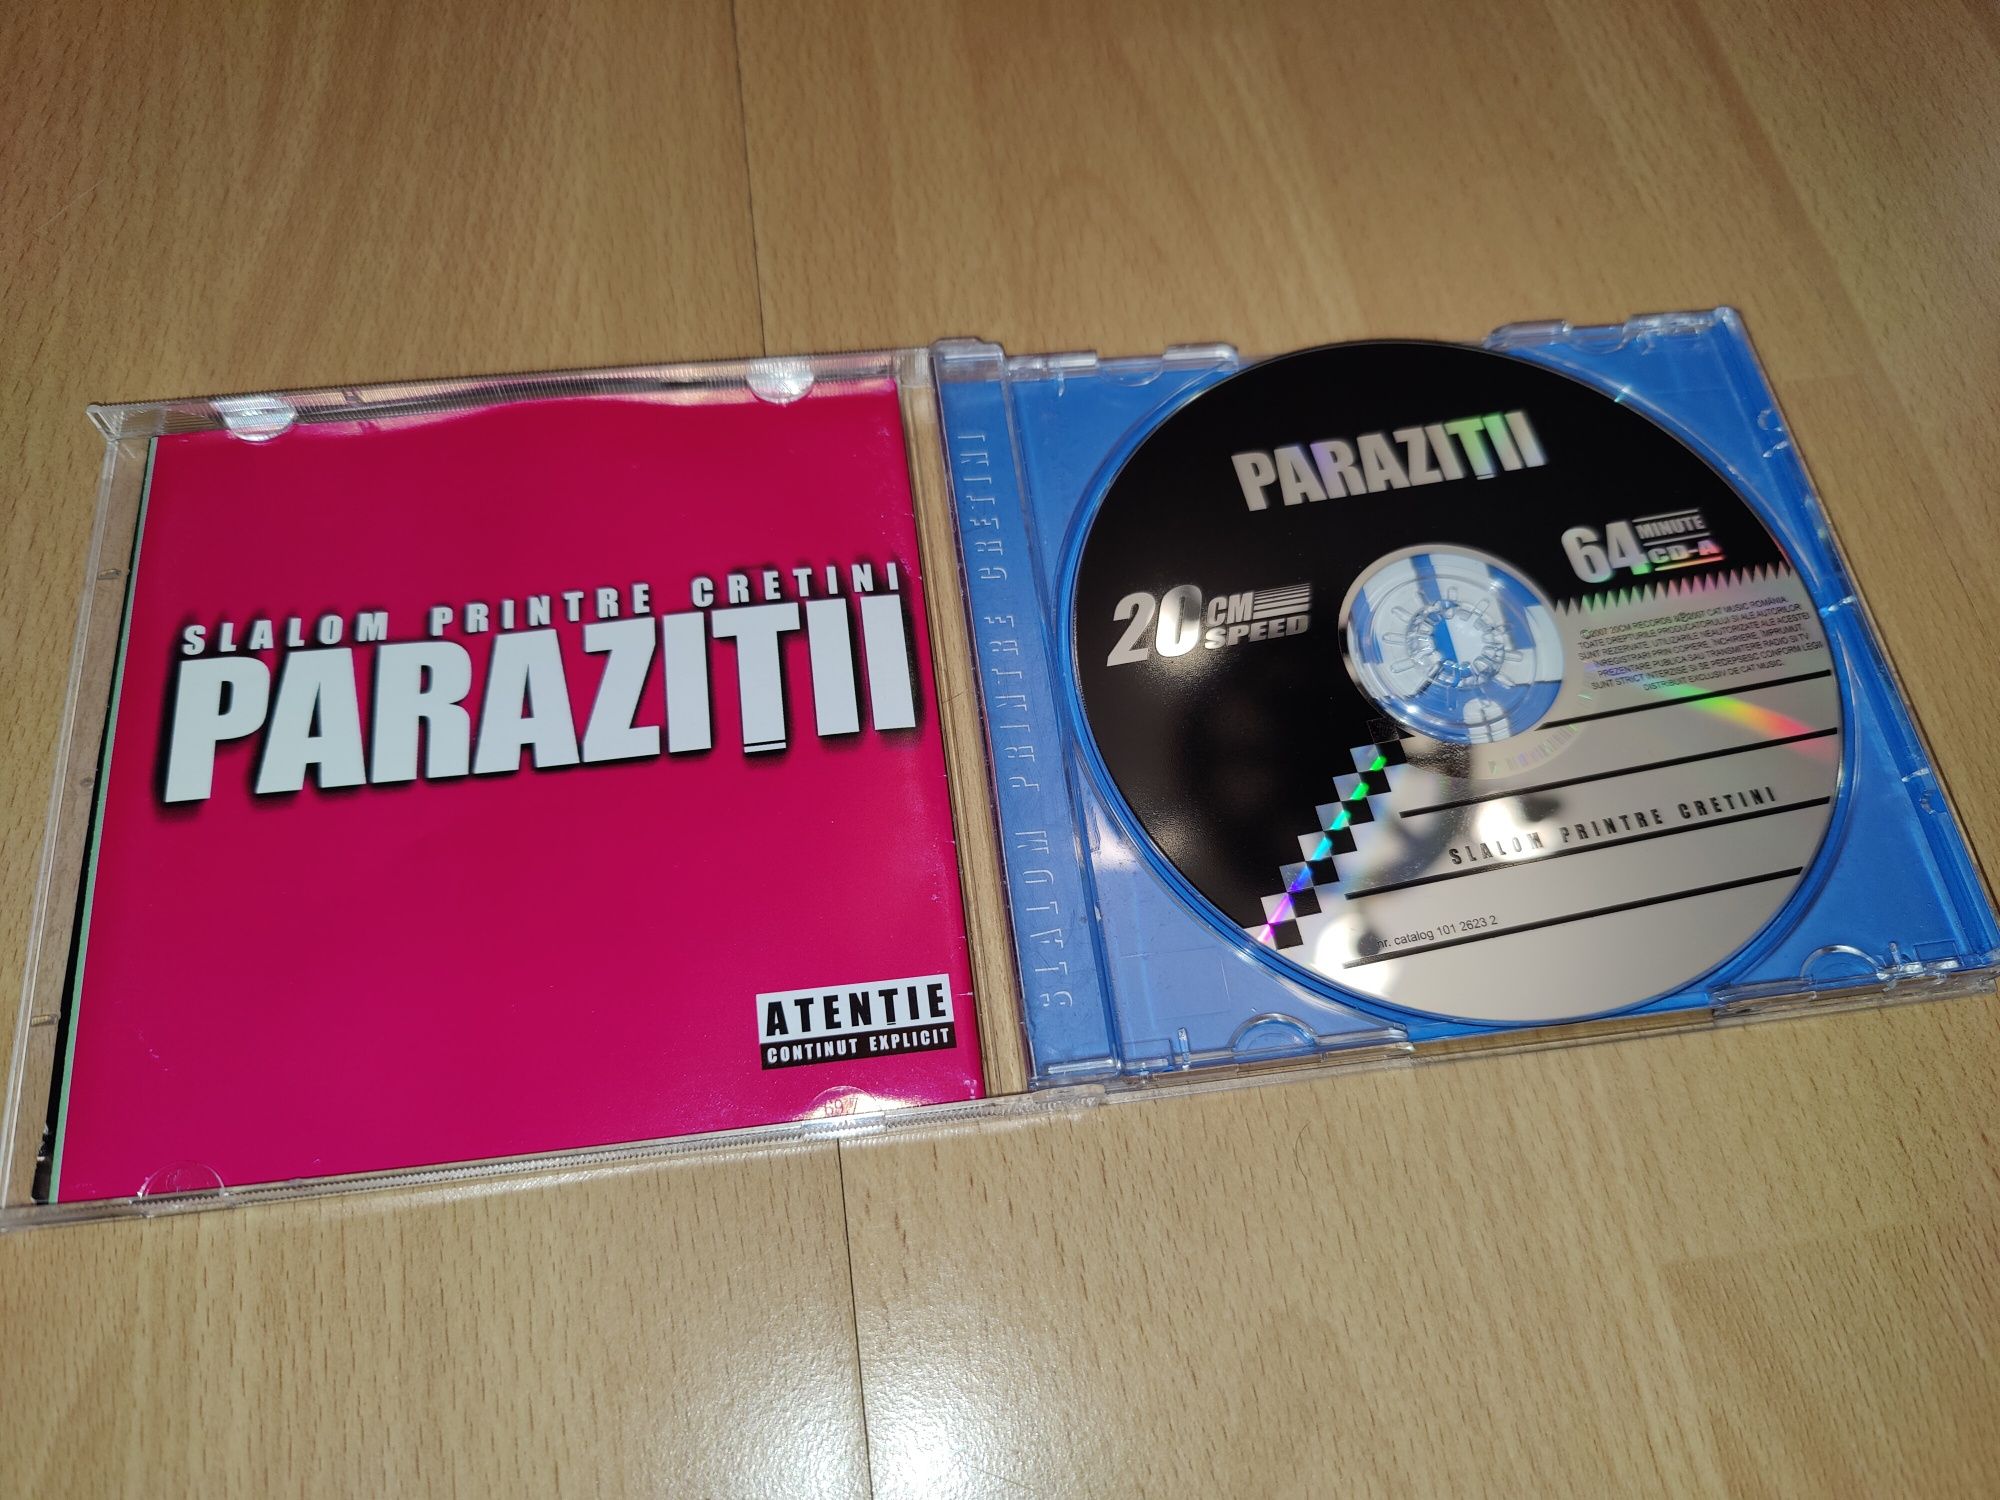 Album CD Parazitii Slalom Printre hip hop romanesc